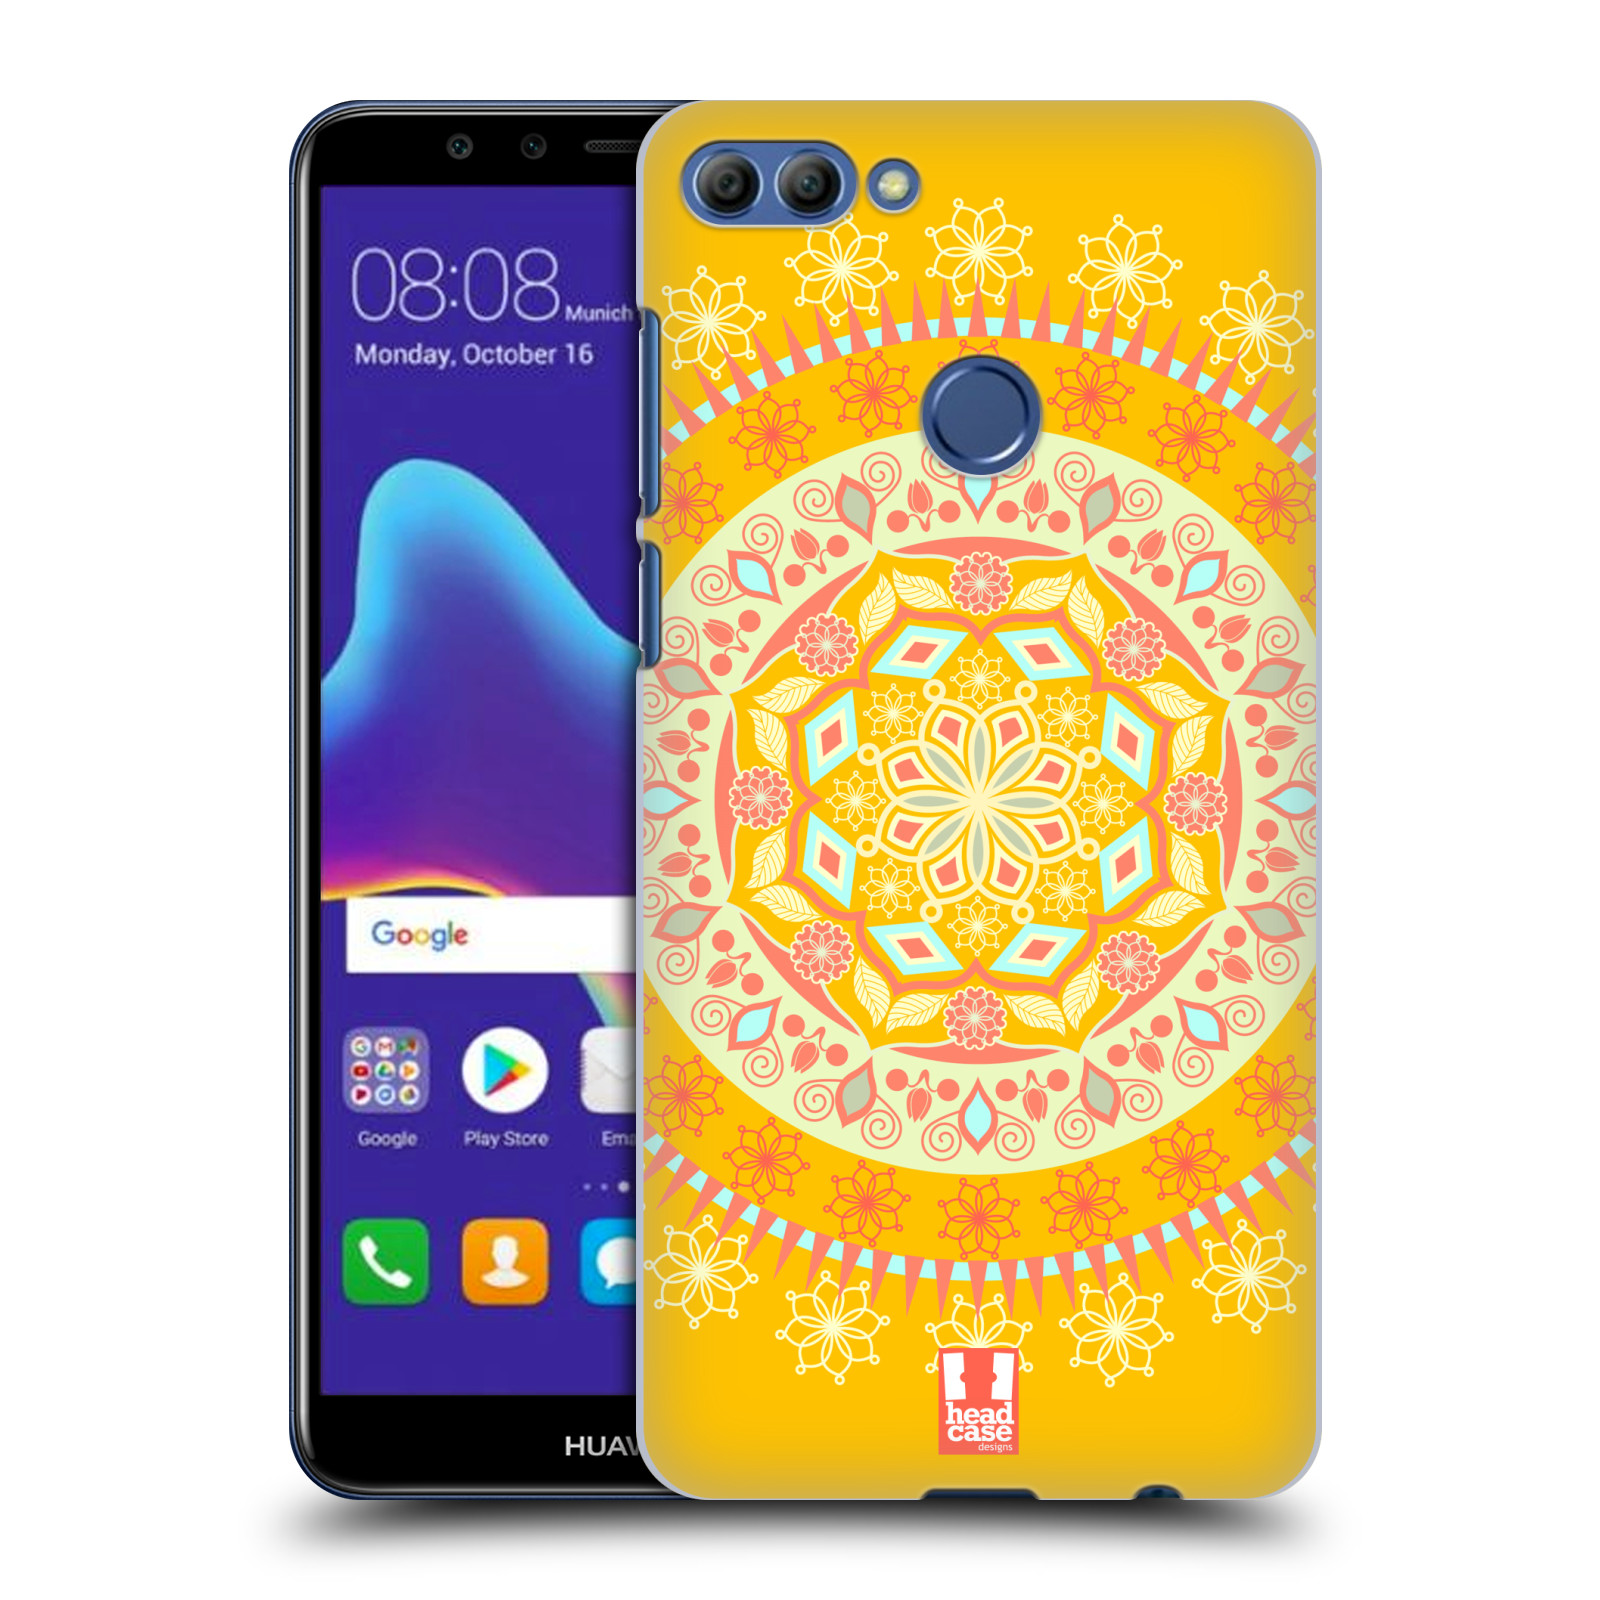 HEAD CASE plastový obal na mobil Huawei Y9 2018 vzor Indie Mandala slunce barevný motiv ŽLUTÁ